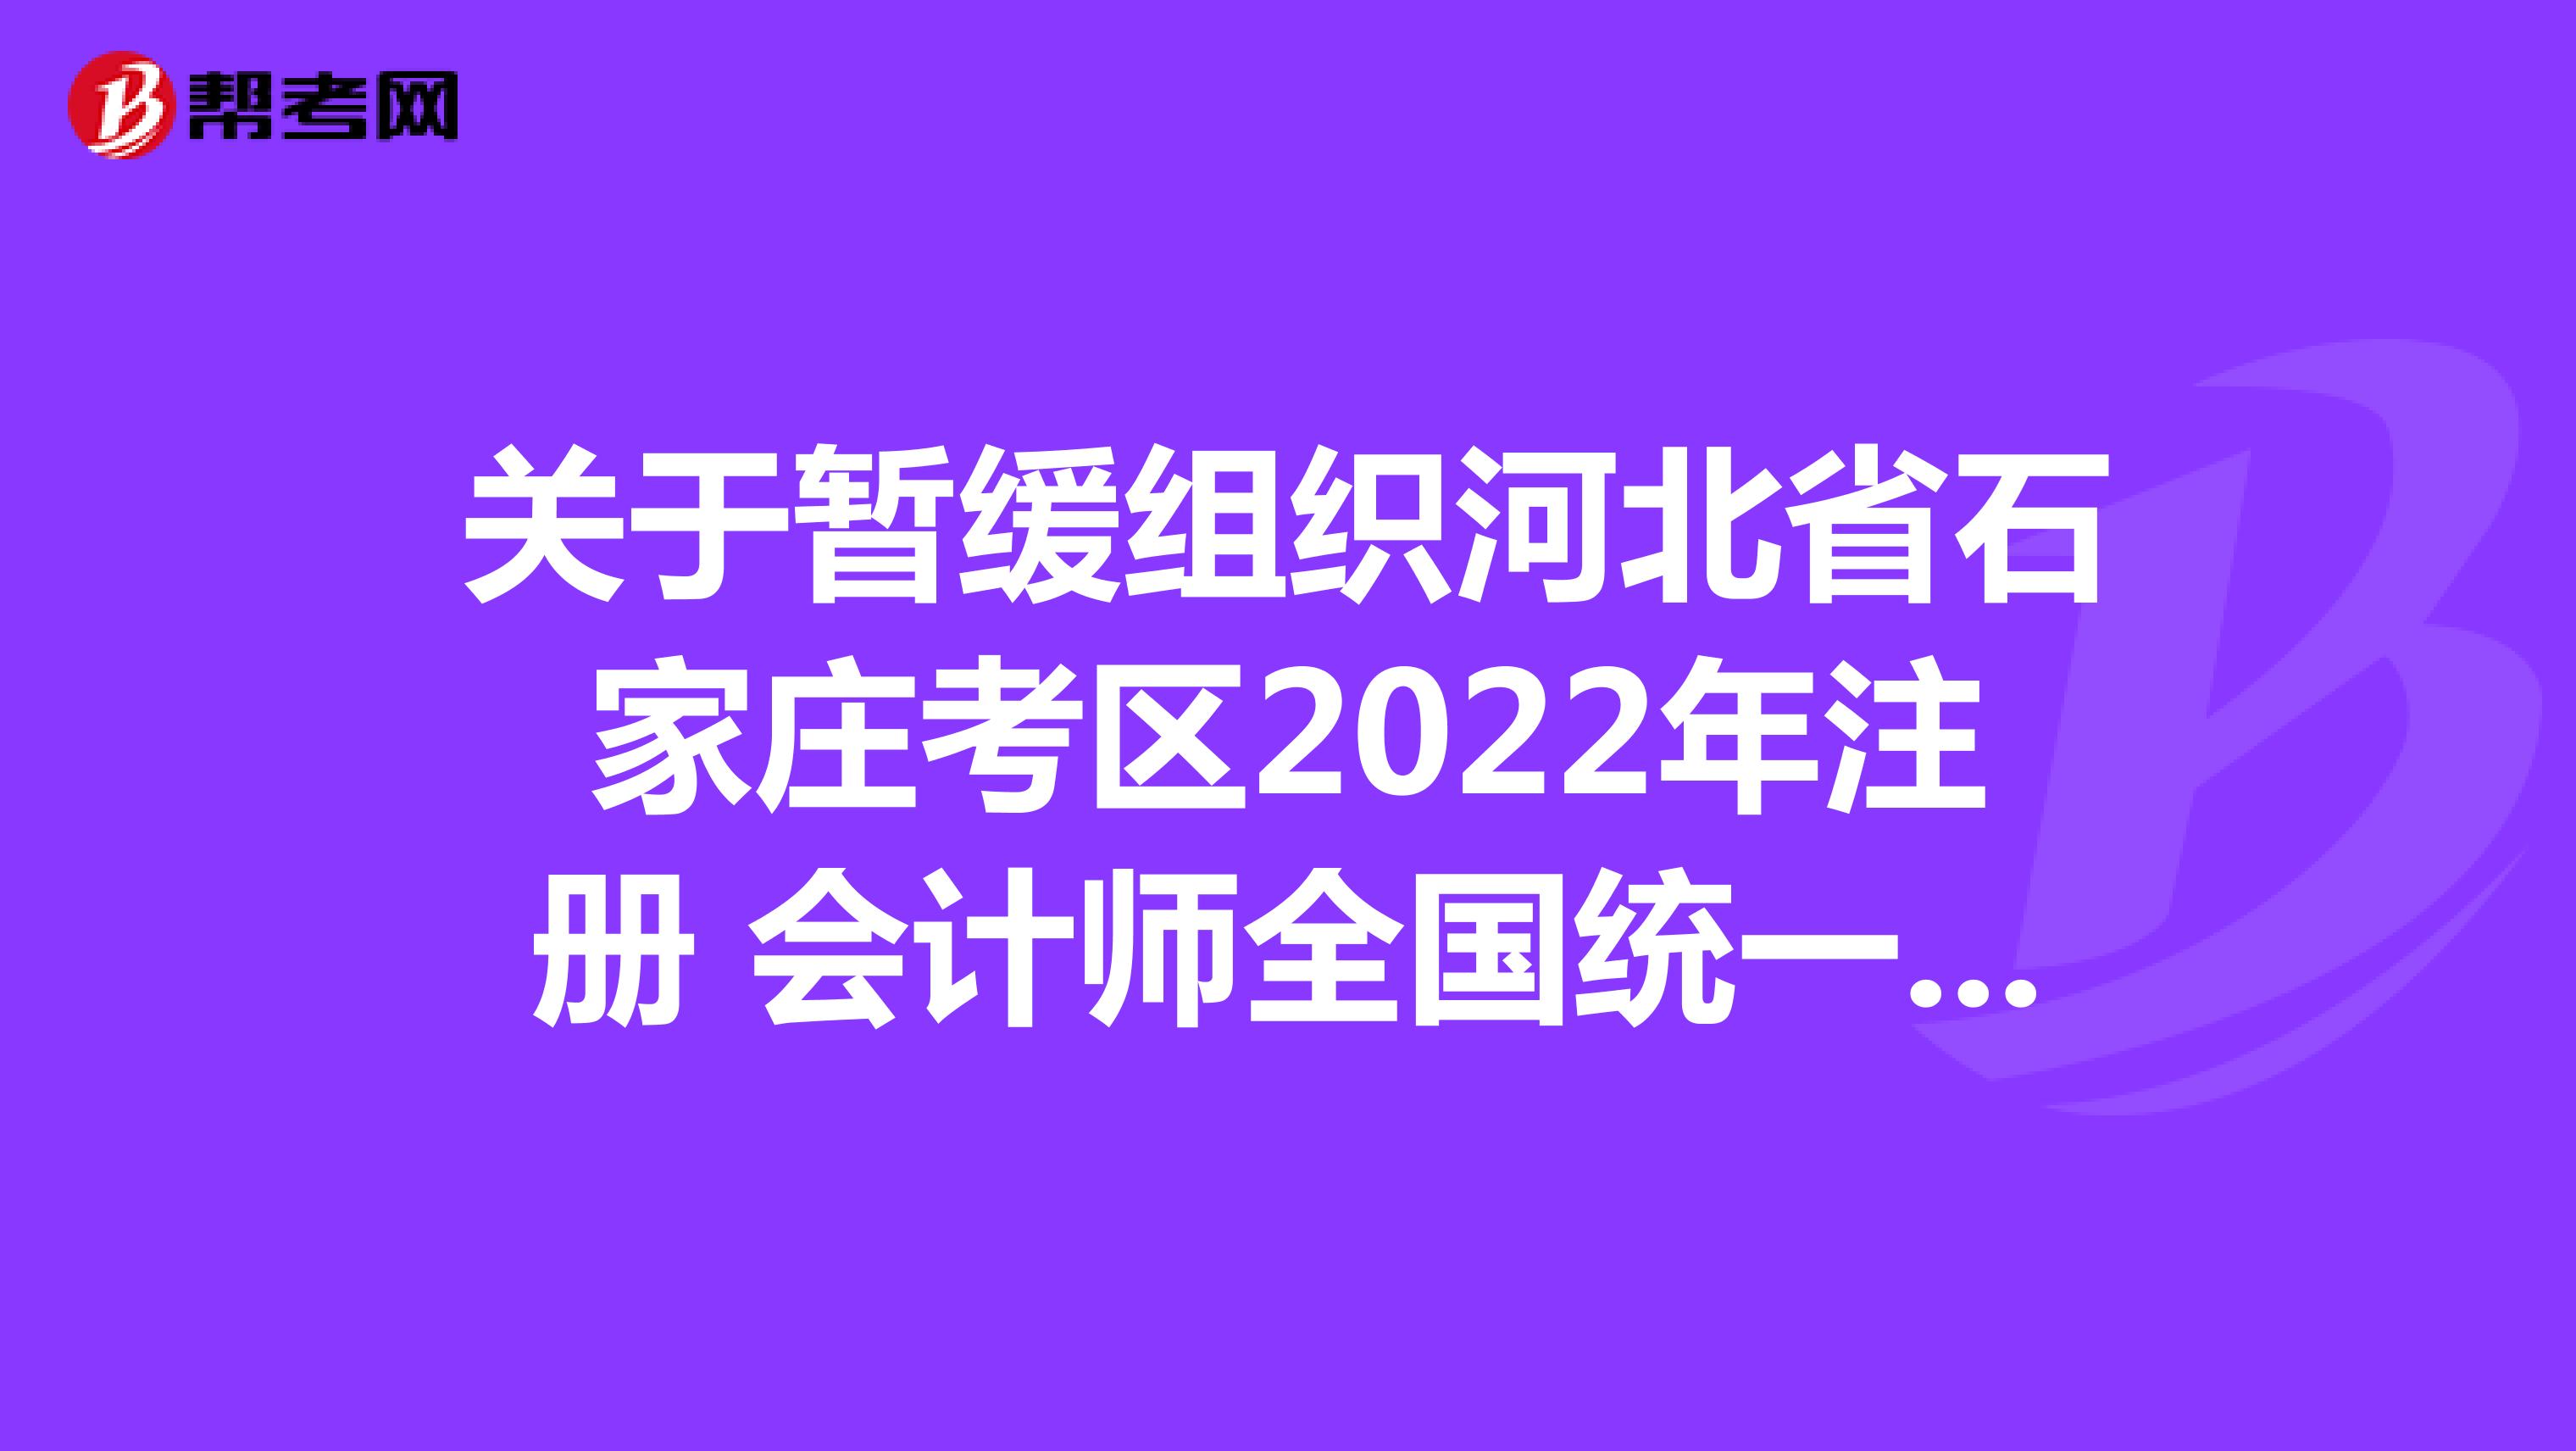 关于暂缓组织河北省石家庄考区2022年注册 会计师全国统一考试的公告